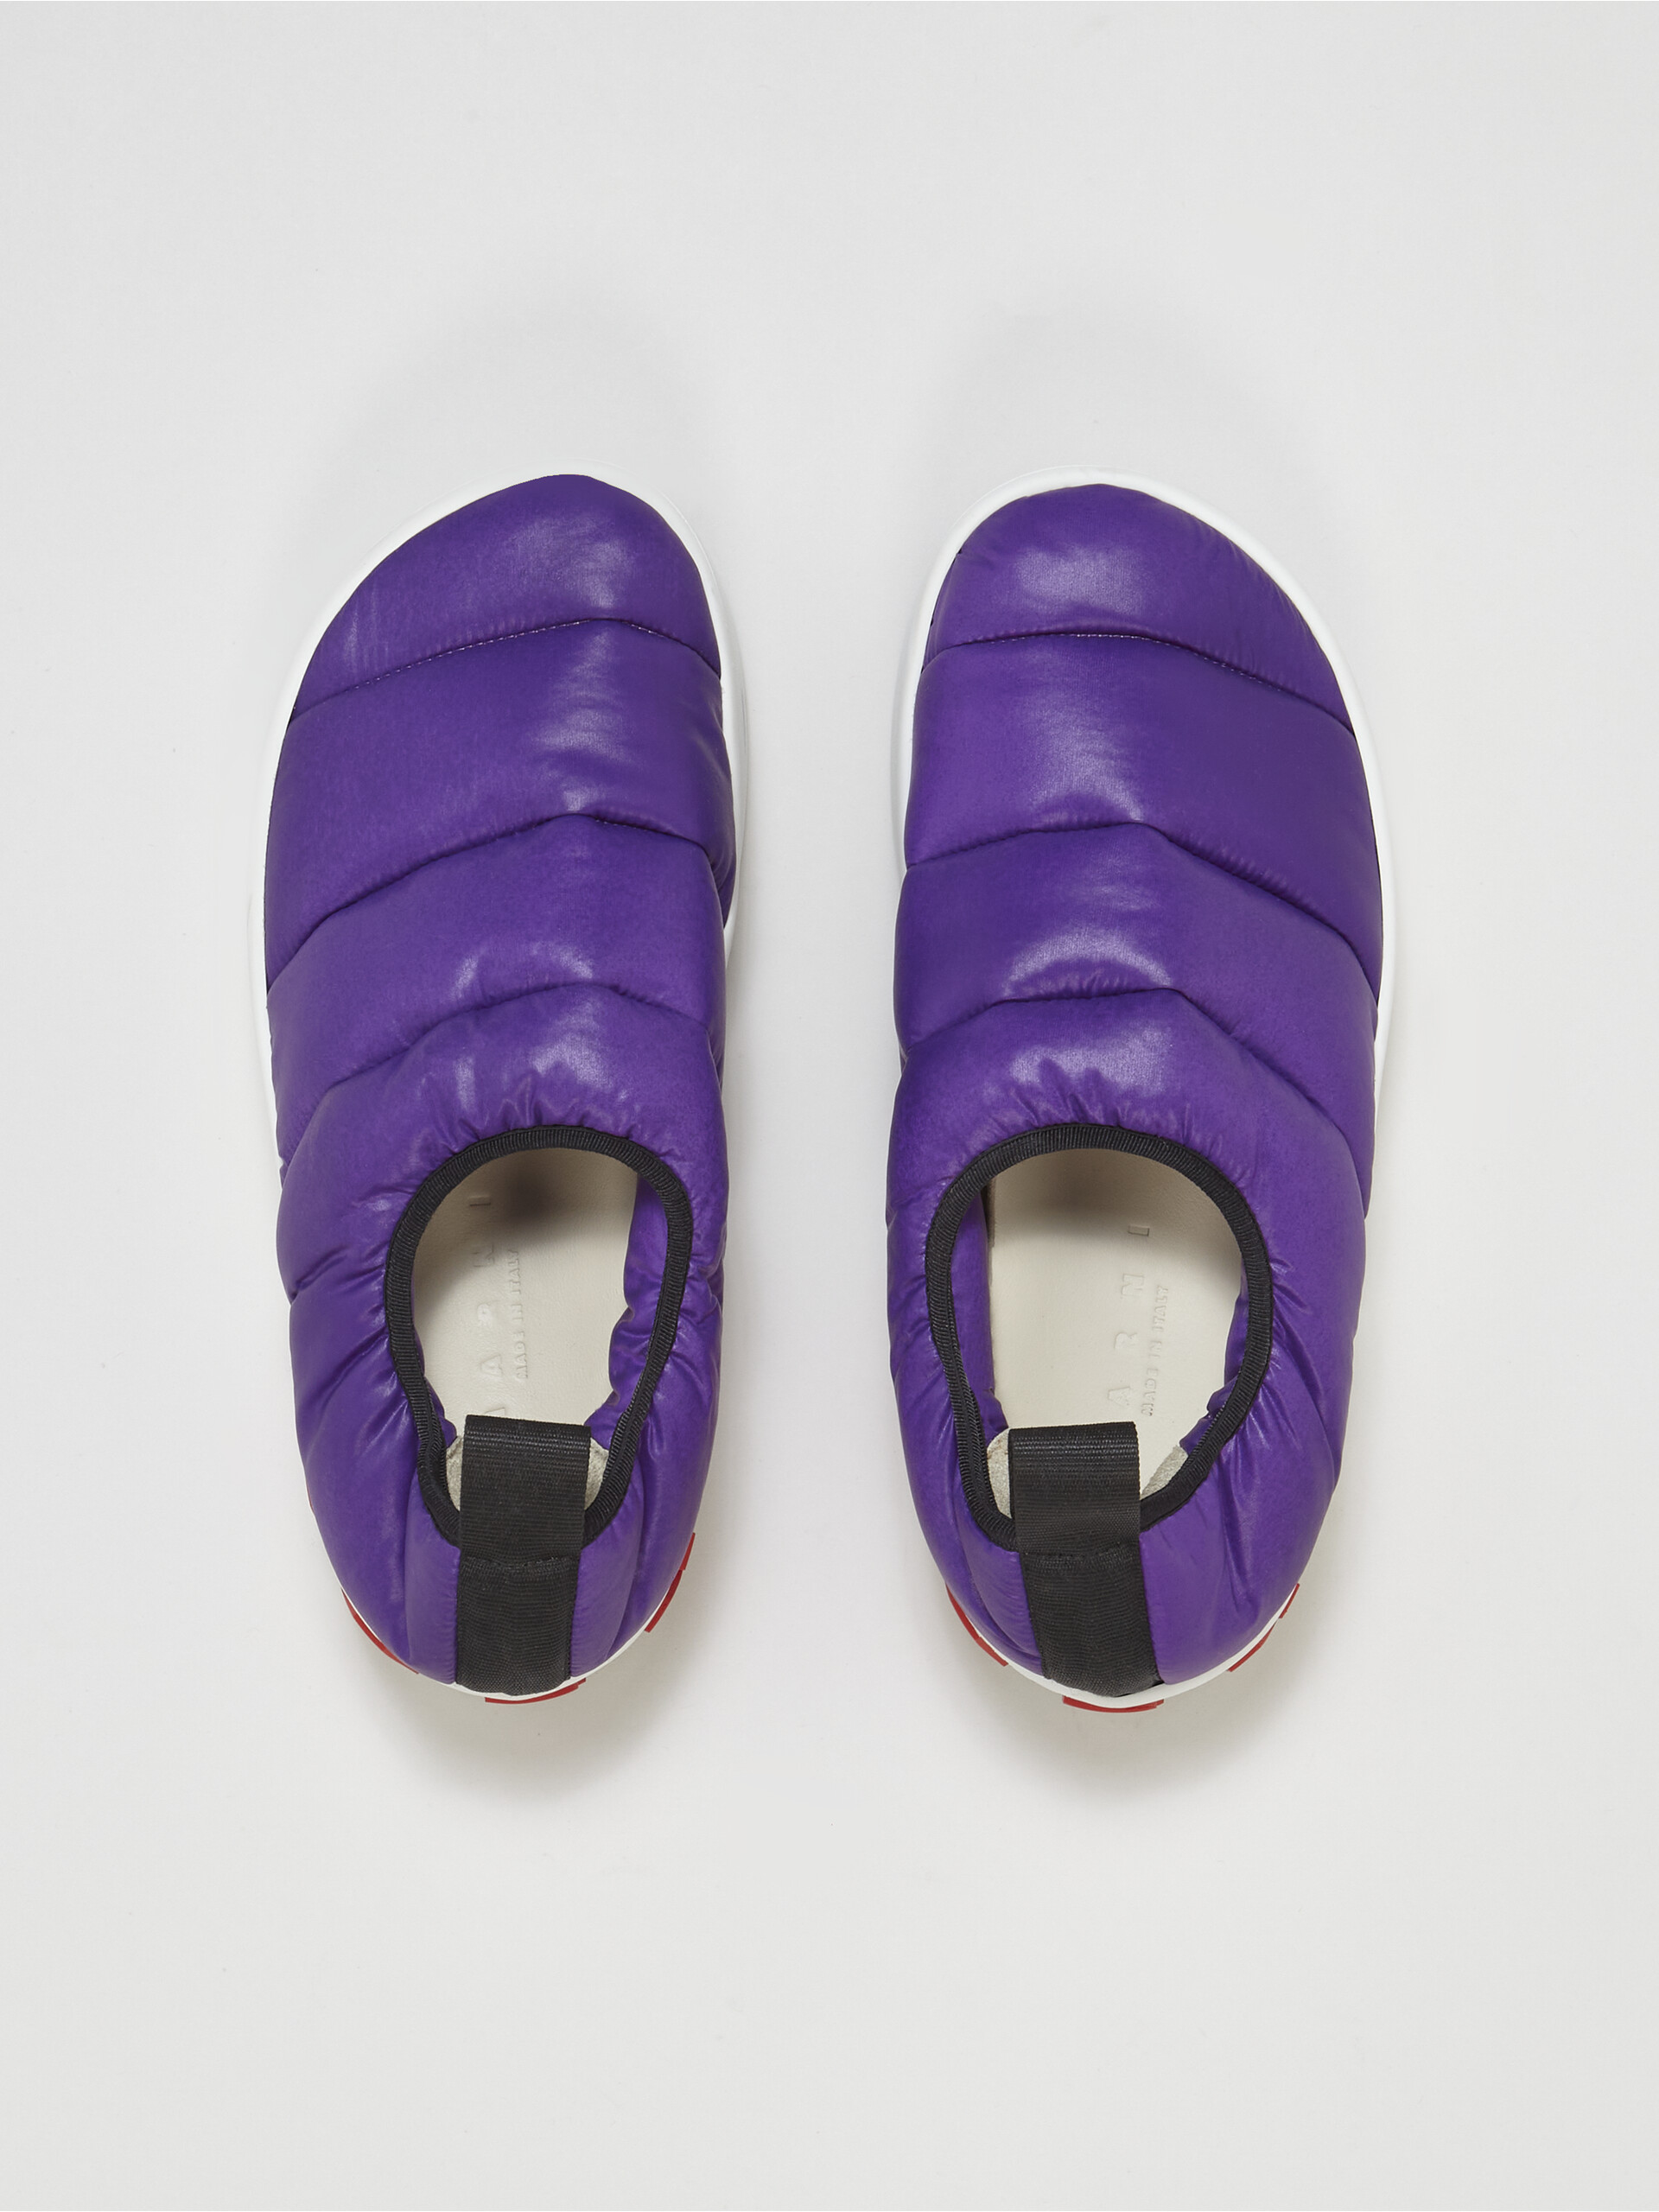 Sneaker PAW senza lacci in nylon trapuntato viola - Sneakers - Image 4